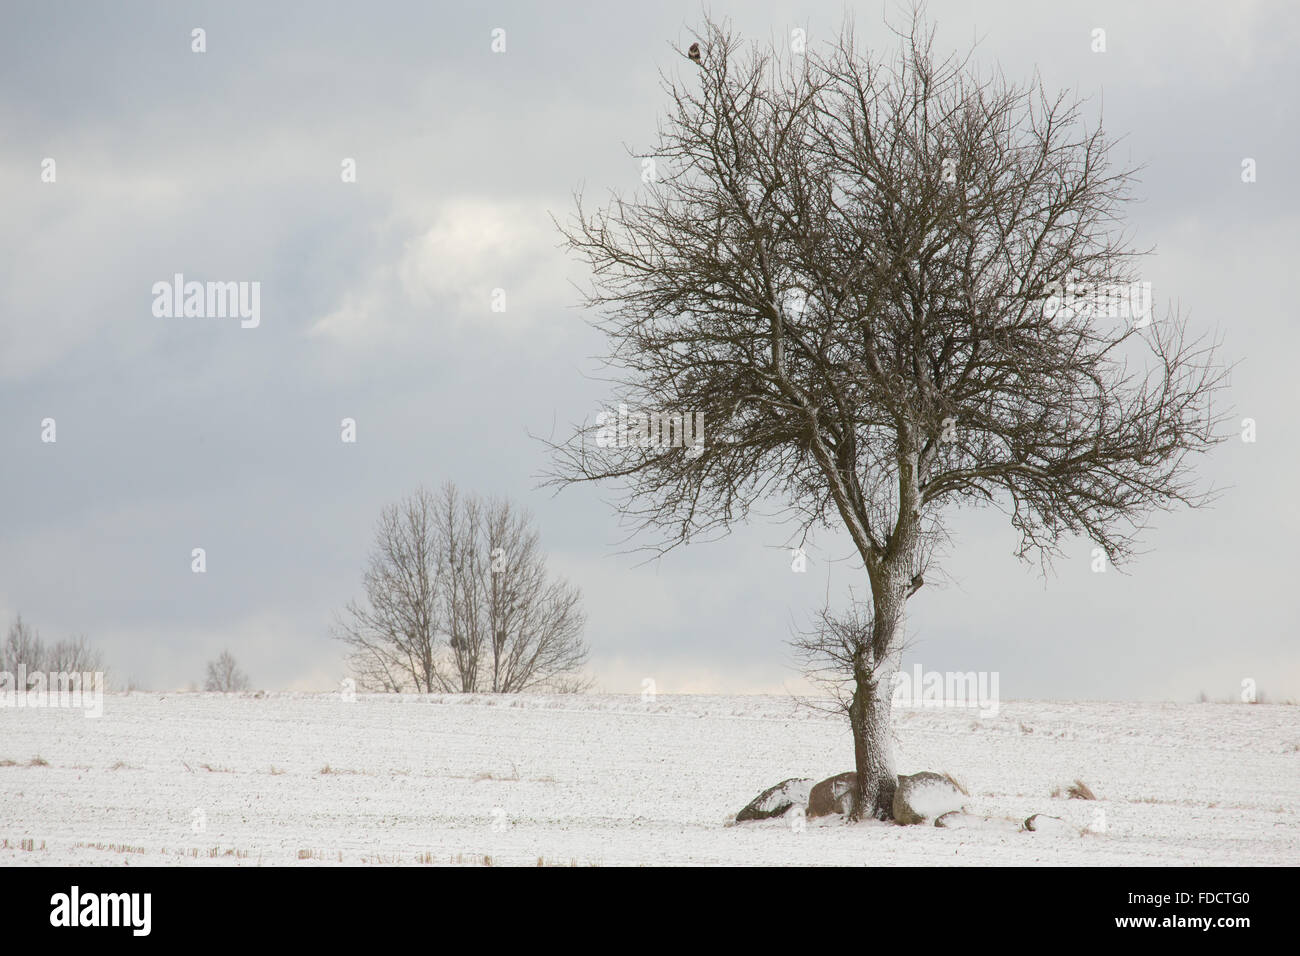 Seul arbre à feuilles caduques en hiver champ neigeux contre ciel nuageux,Podlasie Région,Pologne,Europe Banque D'Images